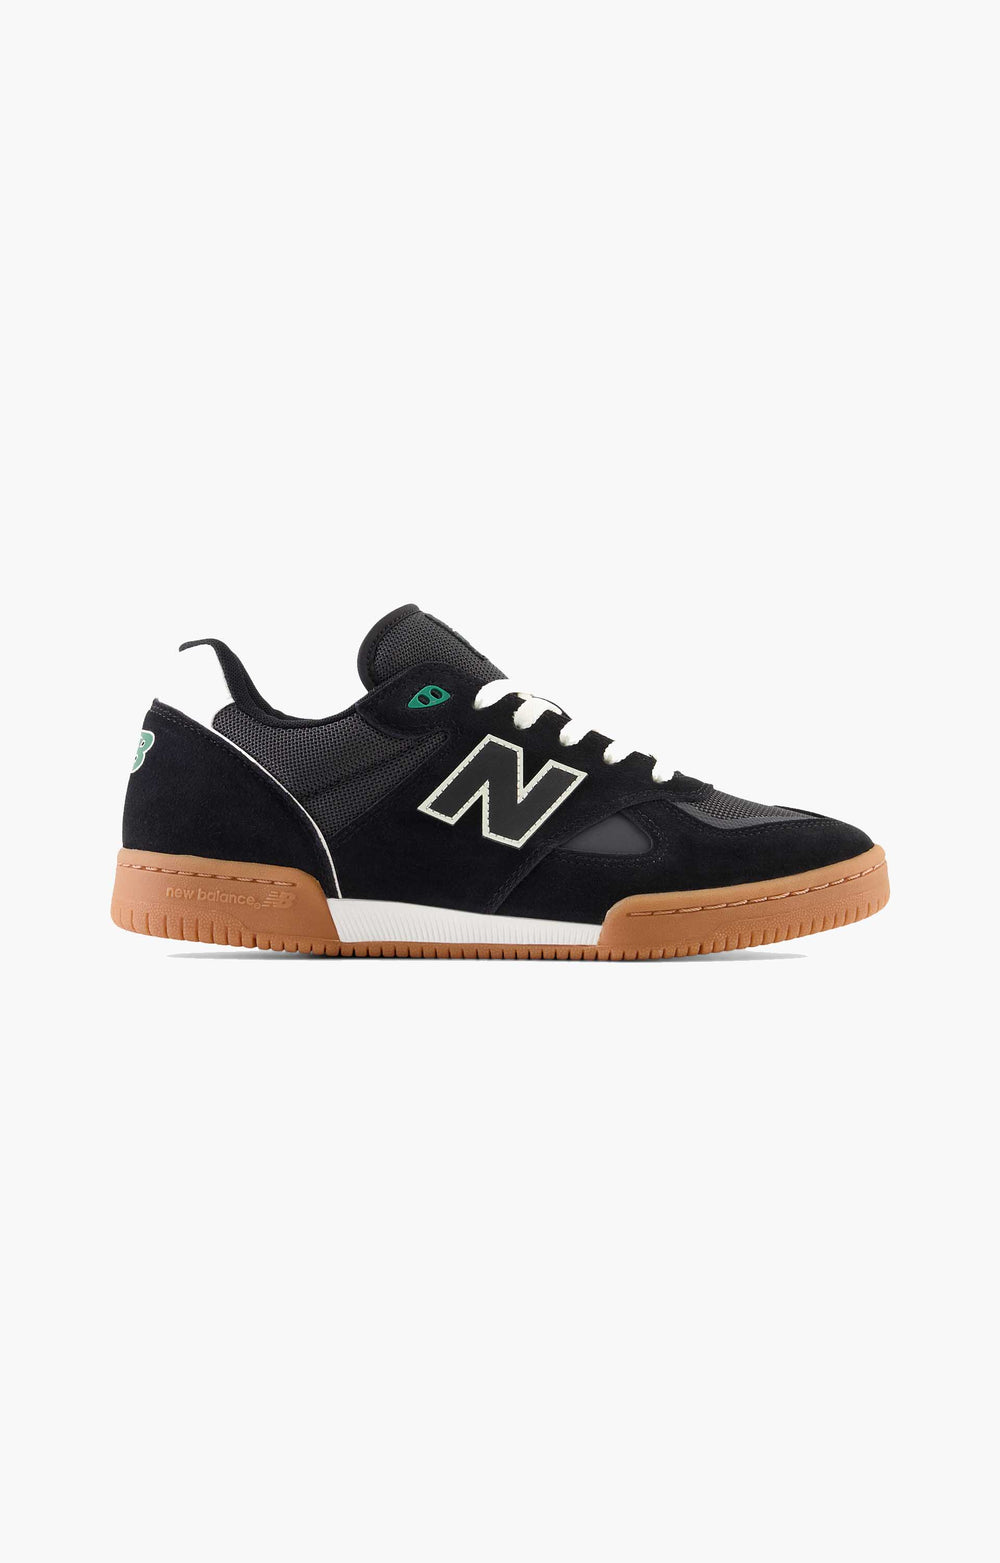 New Balance Numeric Tom Knox NM600BNW Shoe, Black/Gum